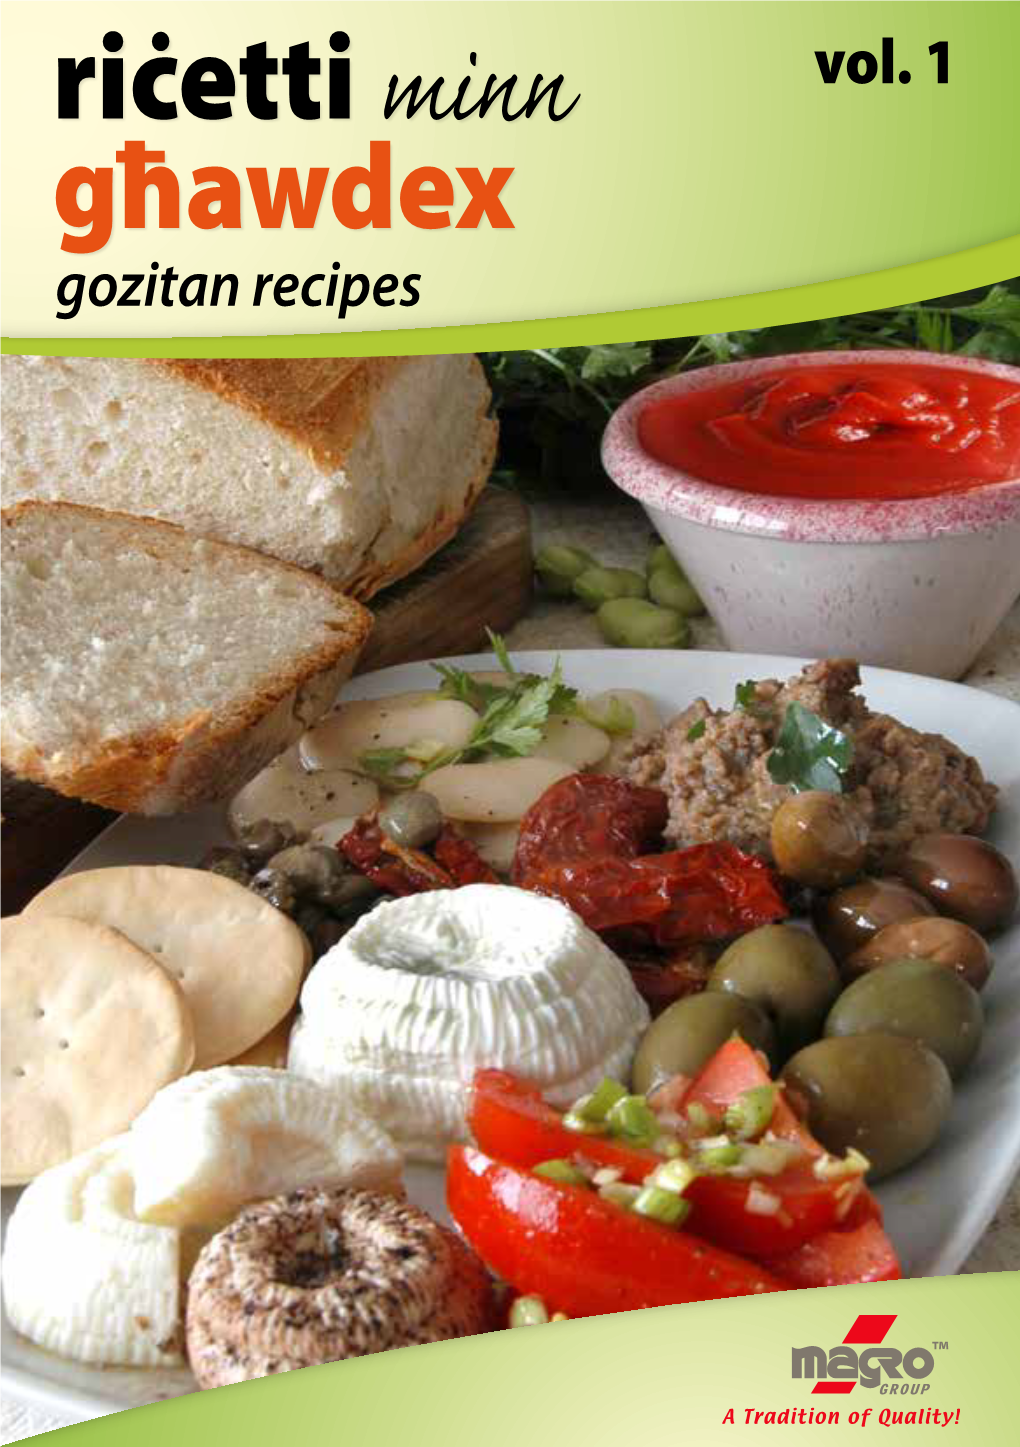 Vol. 1 Gozitan Recipes